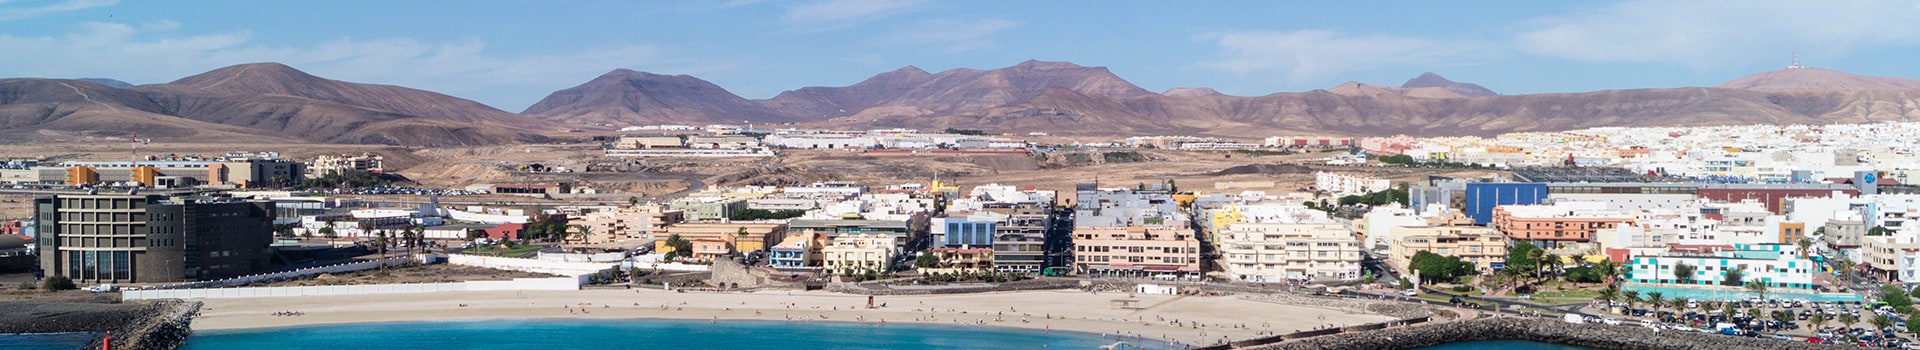 Lanzarote - Fuerteventura